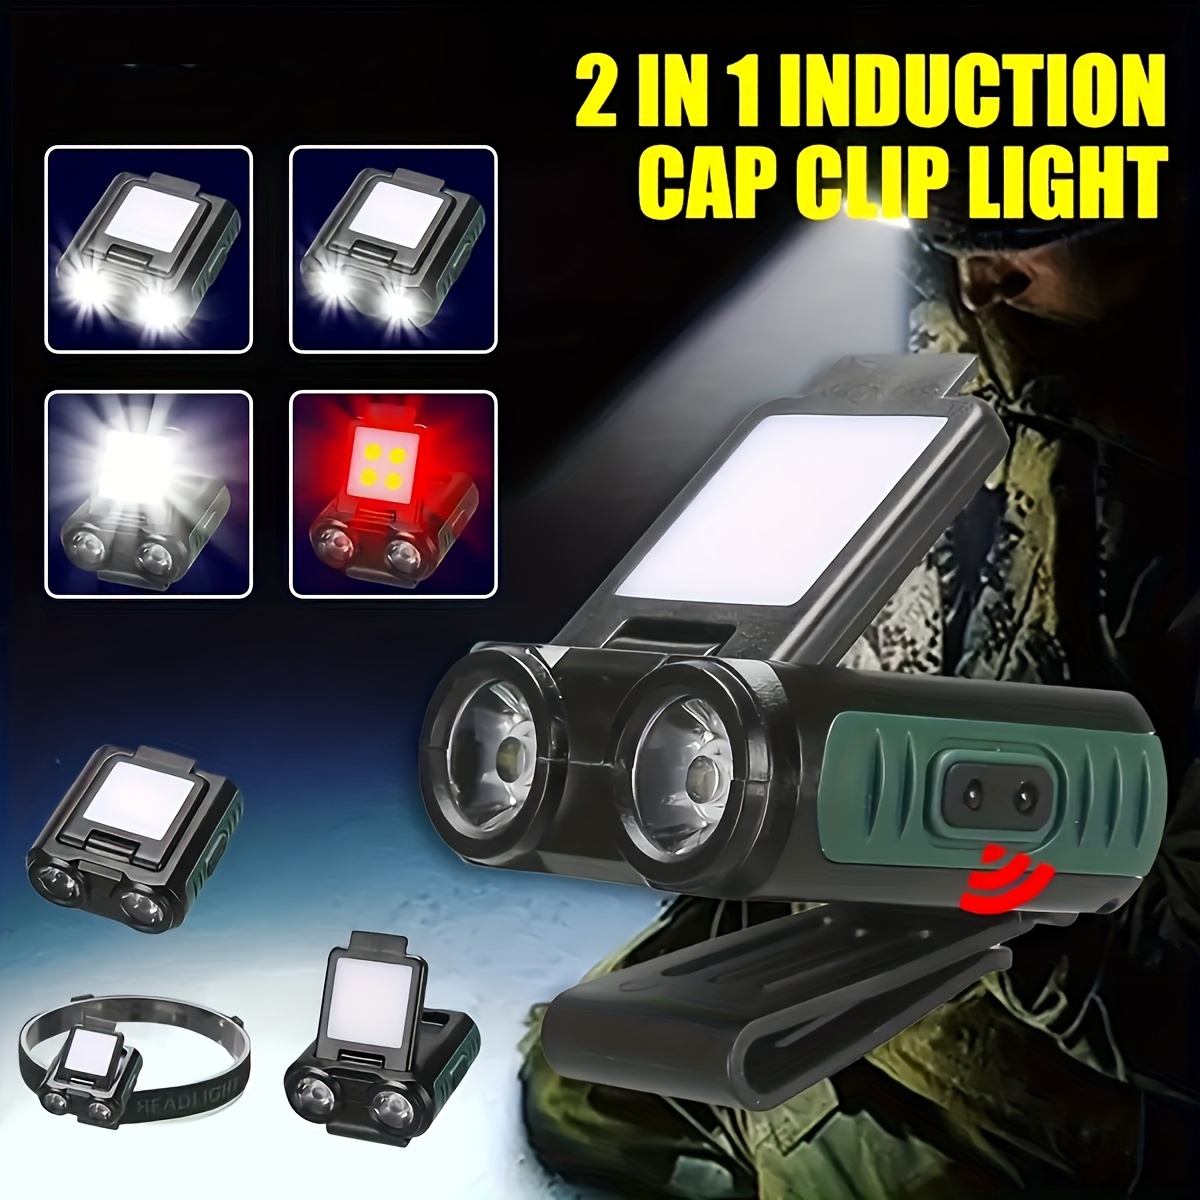 Cap clip lampe frontale induction LED lampe frontale rechargeable USB lampe  frontale LED lampe frontale de camping portable lampe de pêche